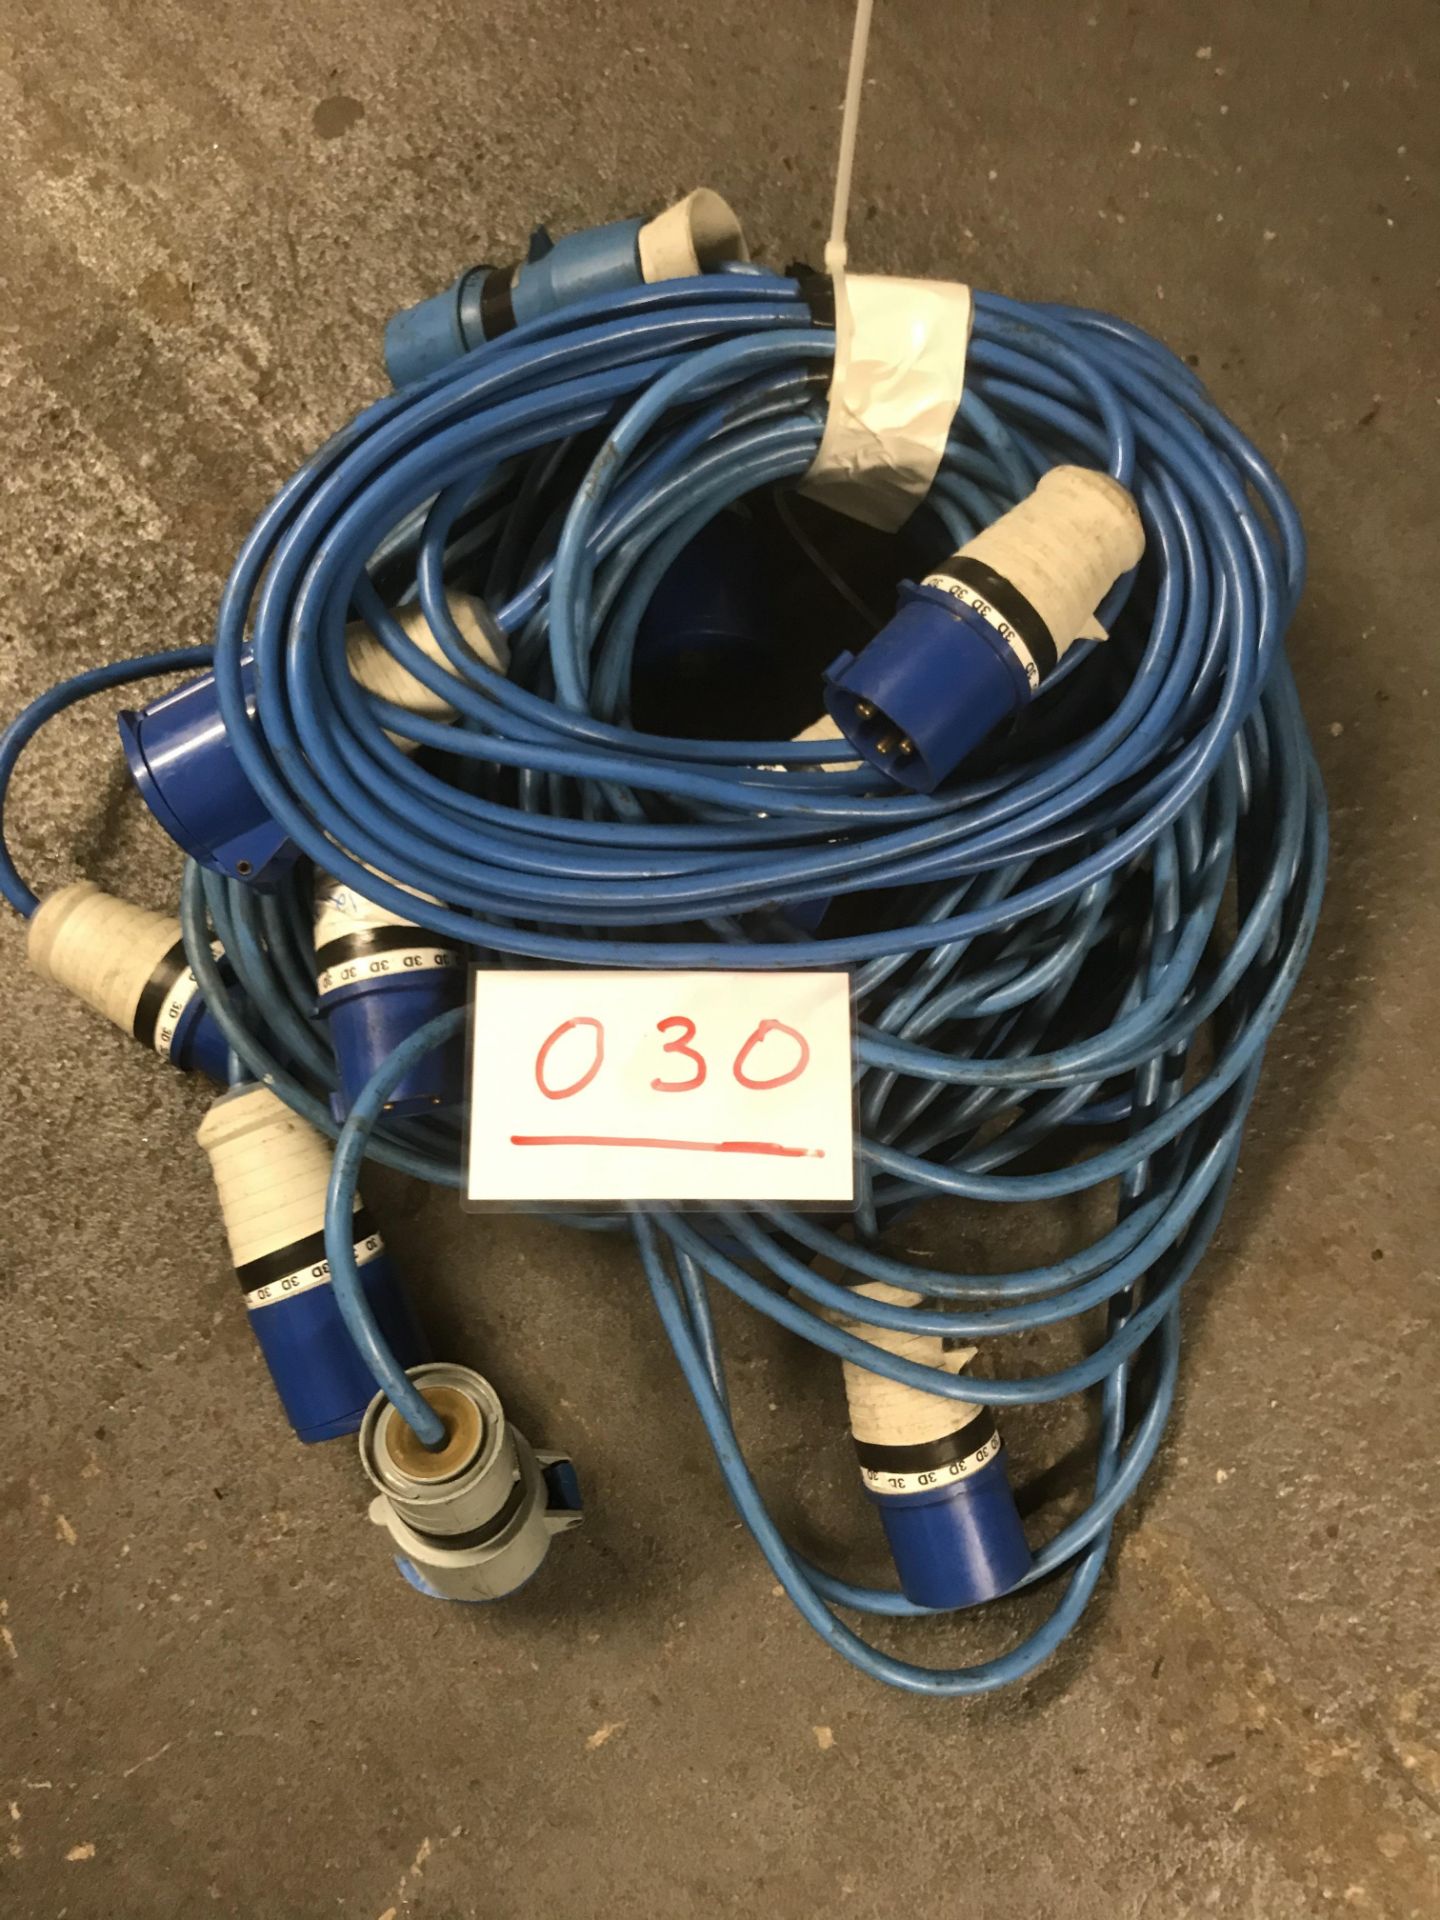 5x 10m arctic blue cable, 32a ends